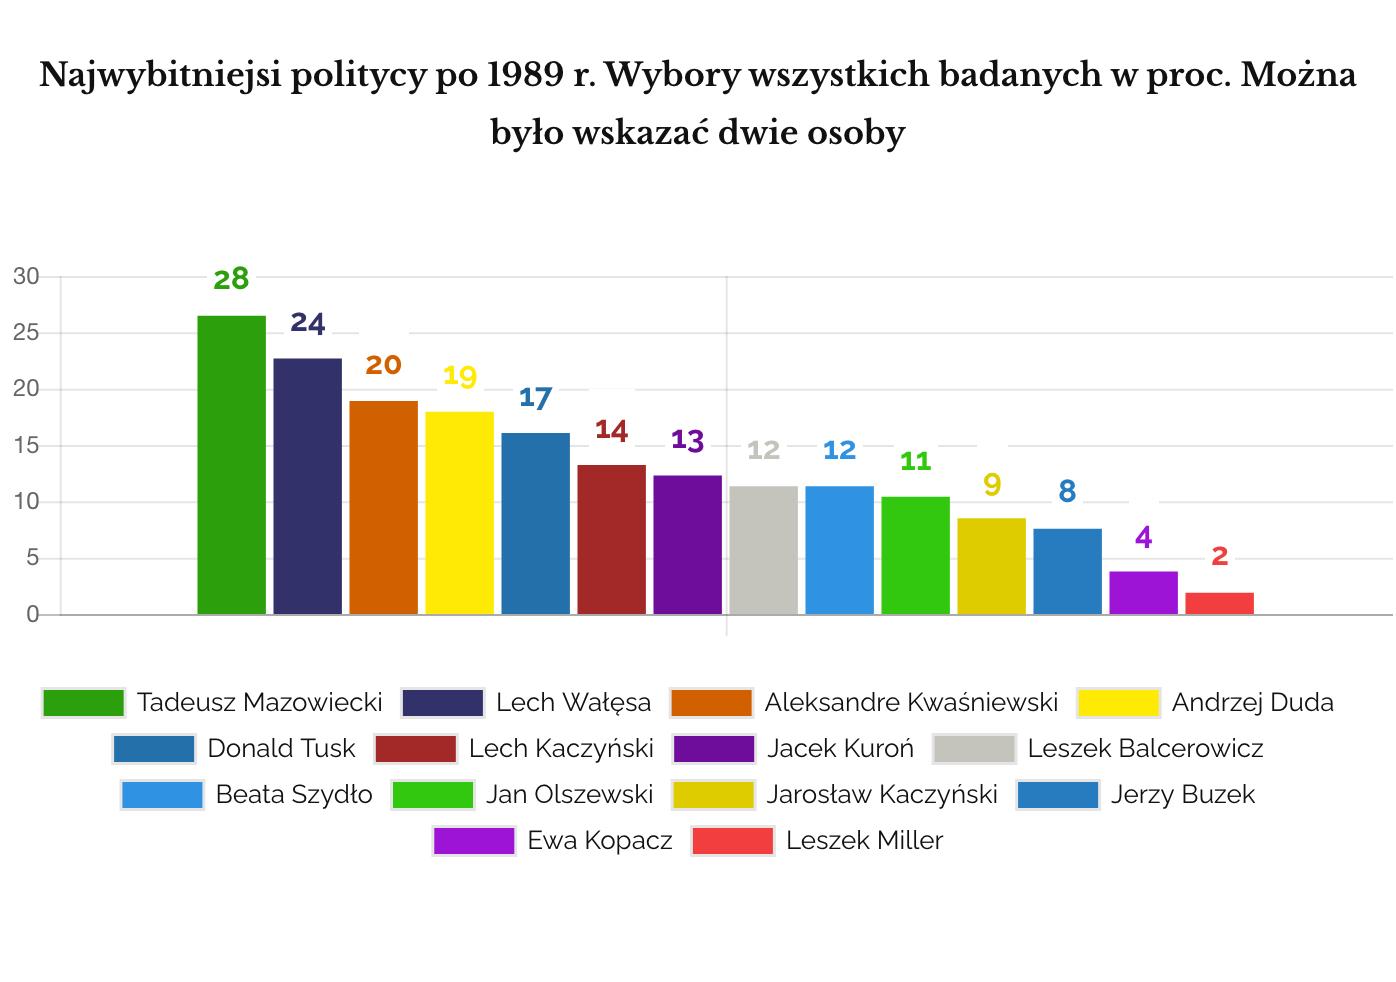 IPSOS Najwybitniejsi polscy politycy po 1989 r. Odpowiedzi wszystkich osób badanych w proc.